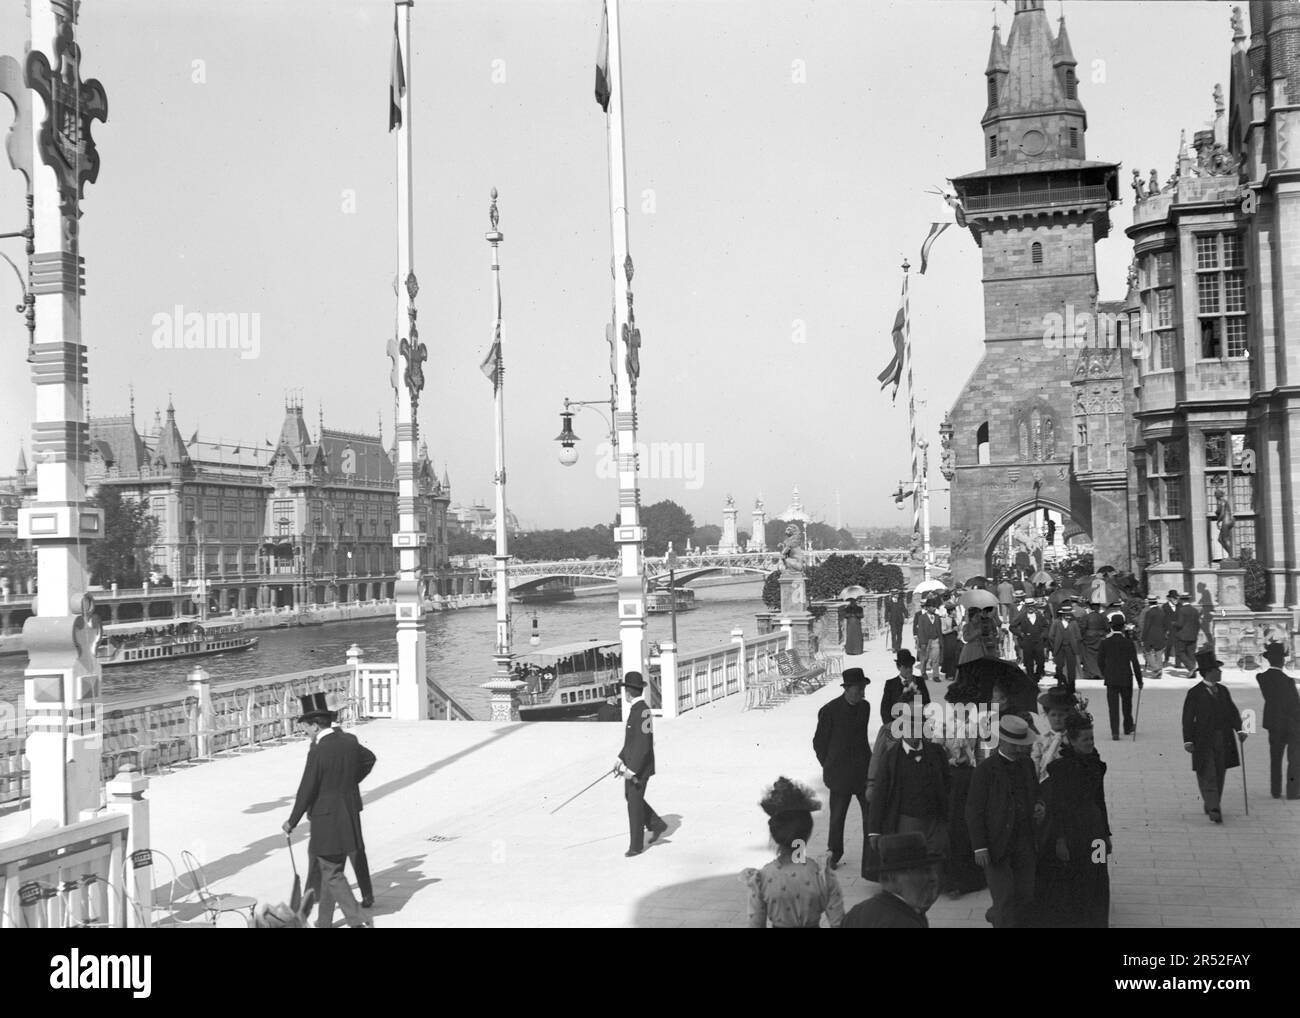 Personnes marchant dans une rue pavée de Paris. Avec pont Alexandre III en arrière-plan. Début du 20th siècle. Ancienne photo numérisée. Banque D'Images